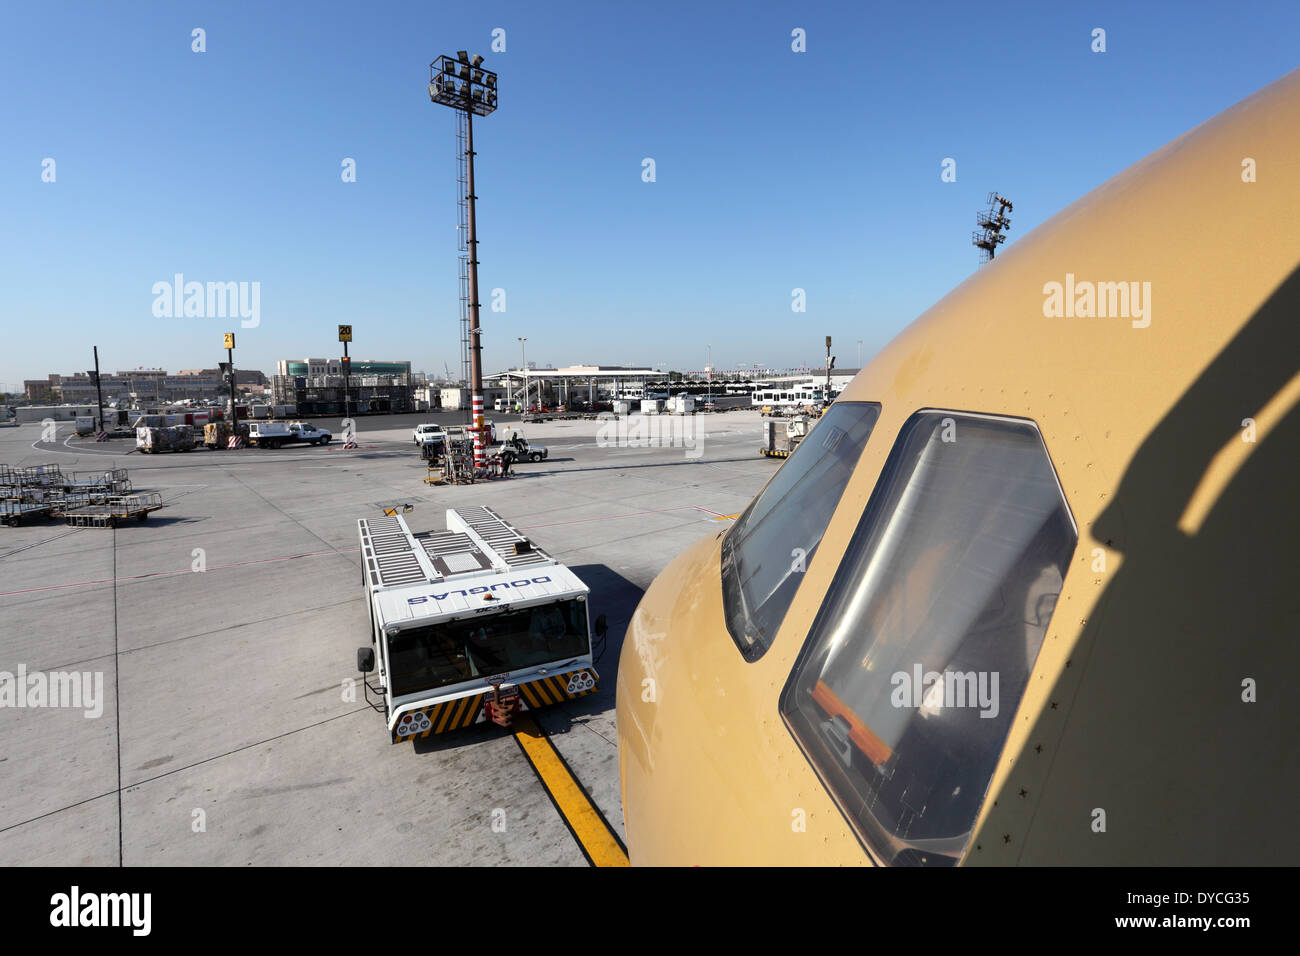 Gulf Air avion à l'aéroport de Manama. Royaume de Bahreïn, au Moyen-Orient Banque D'Images